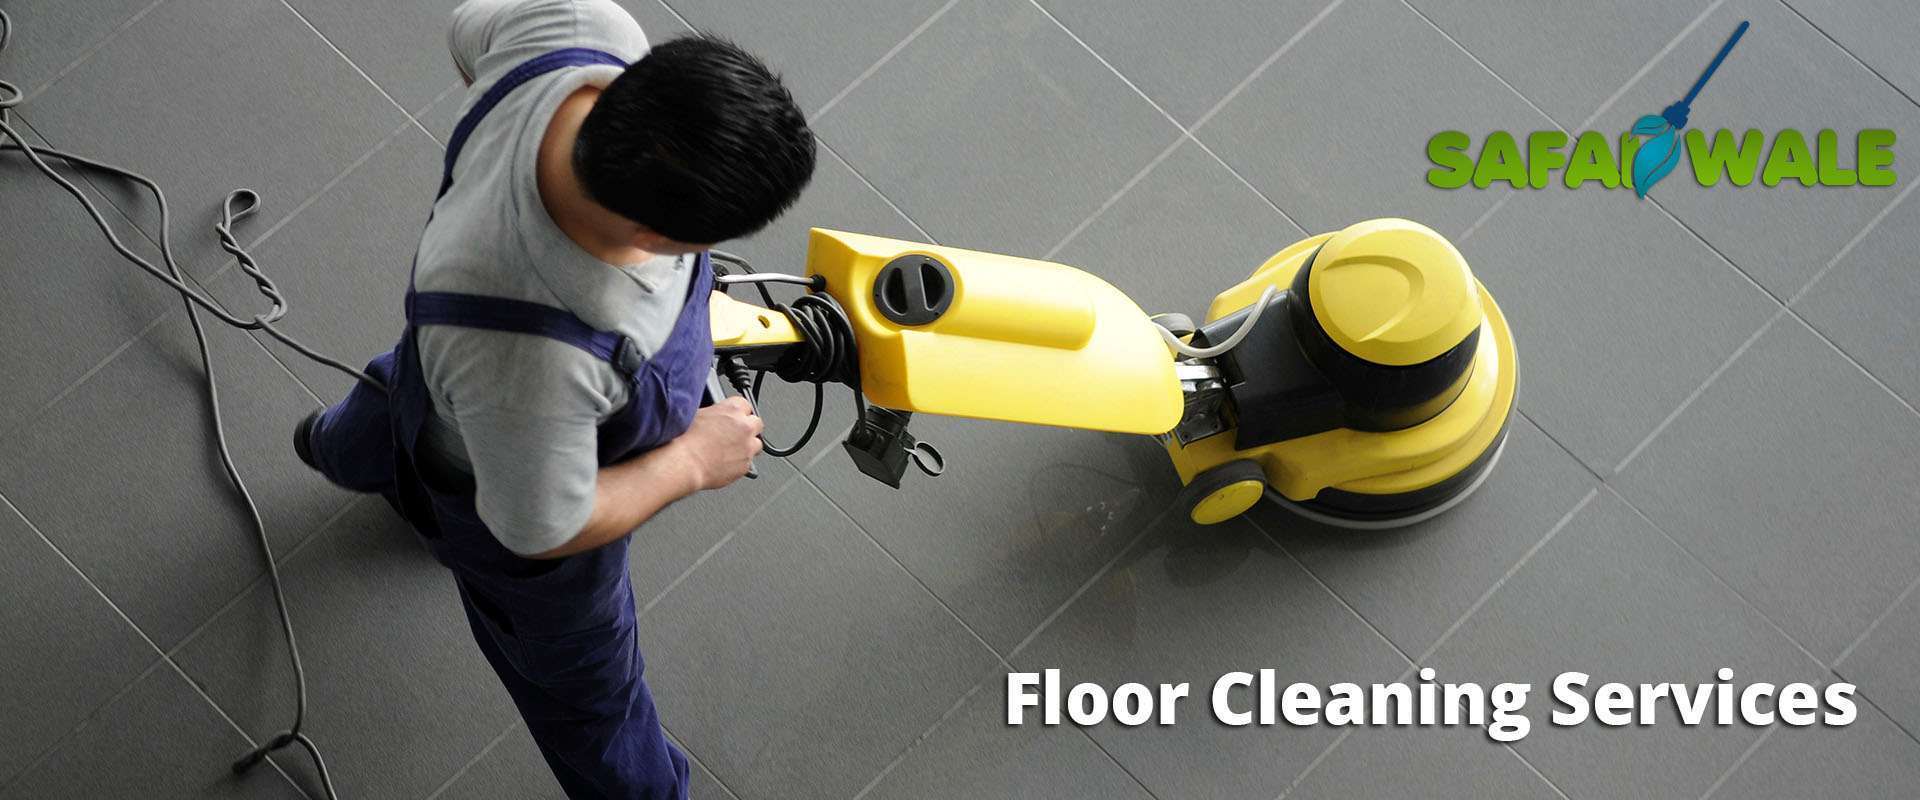 floor cleaning services in Indirapuram 